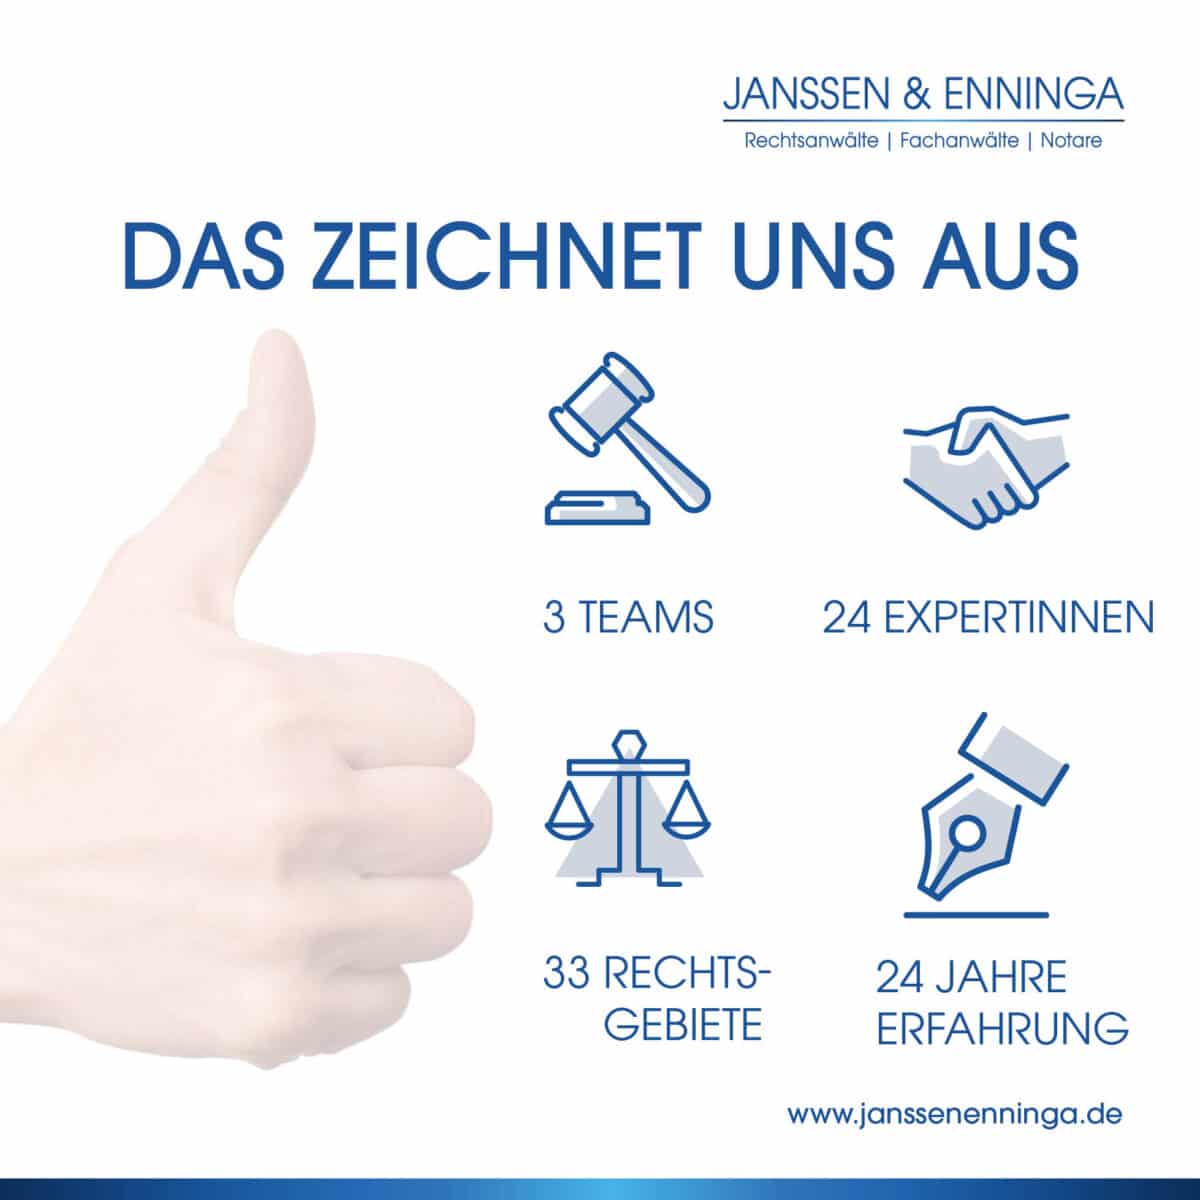 09 Janssen und Enninga das zeichenet und aus rechtsanwalt rechtsgebiete und 24 jahre erfahrung